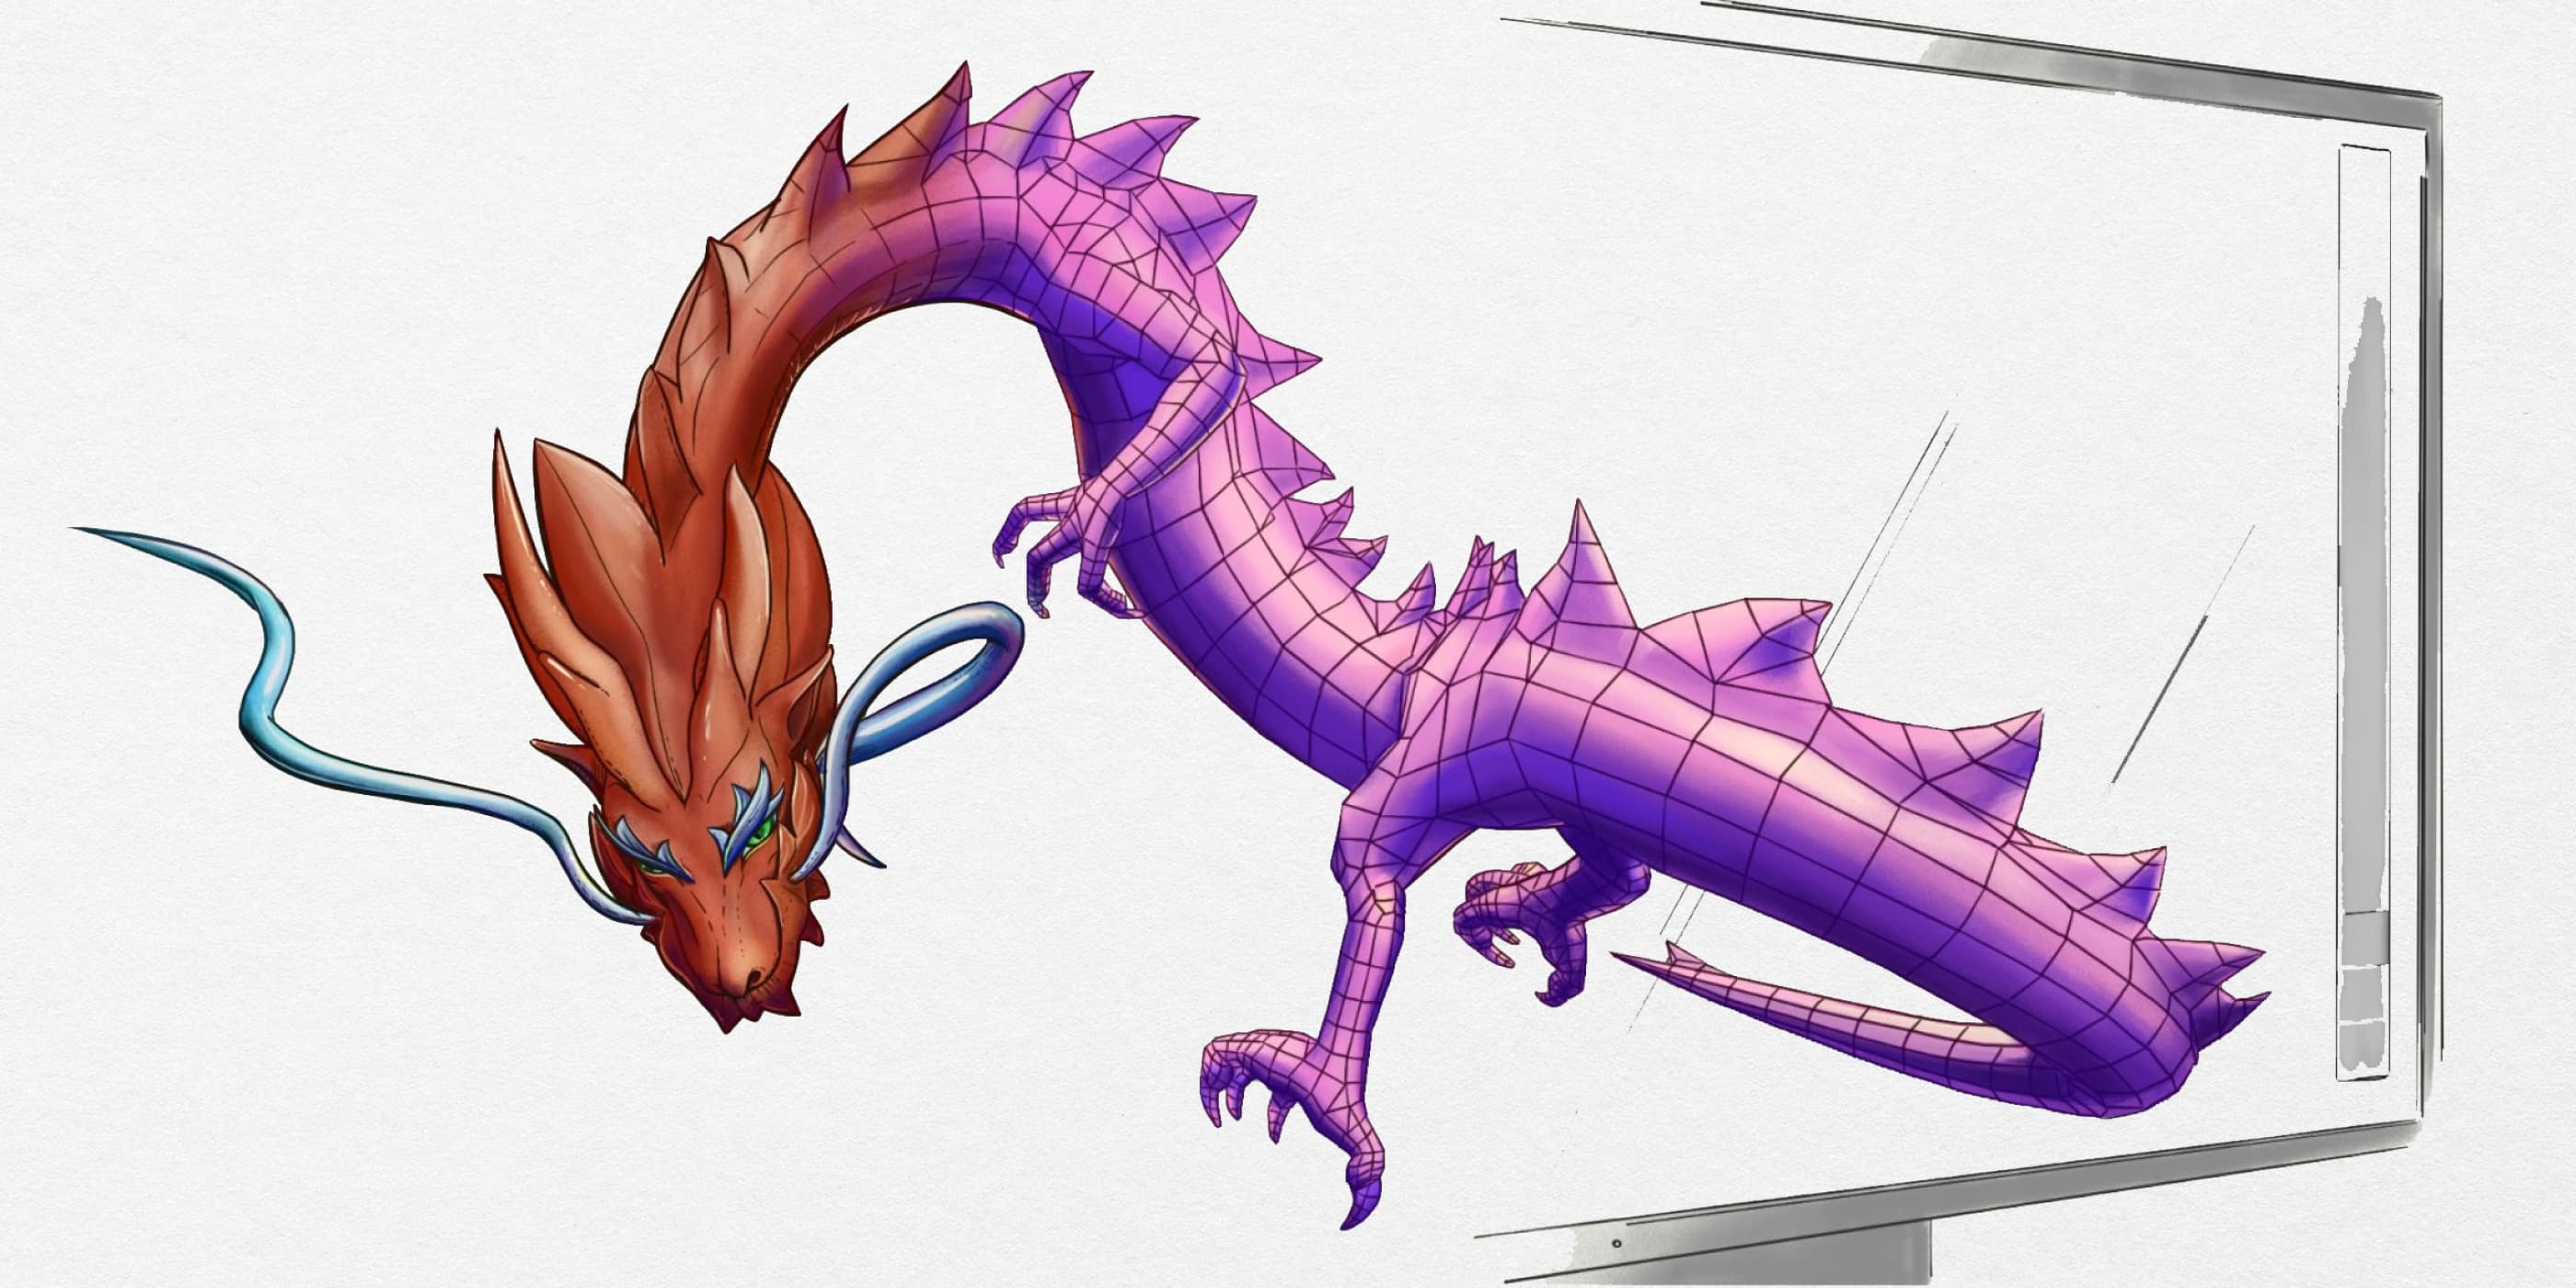 Artec 3D Dragon illustration